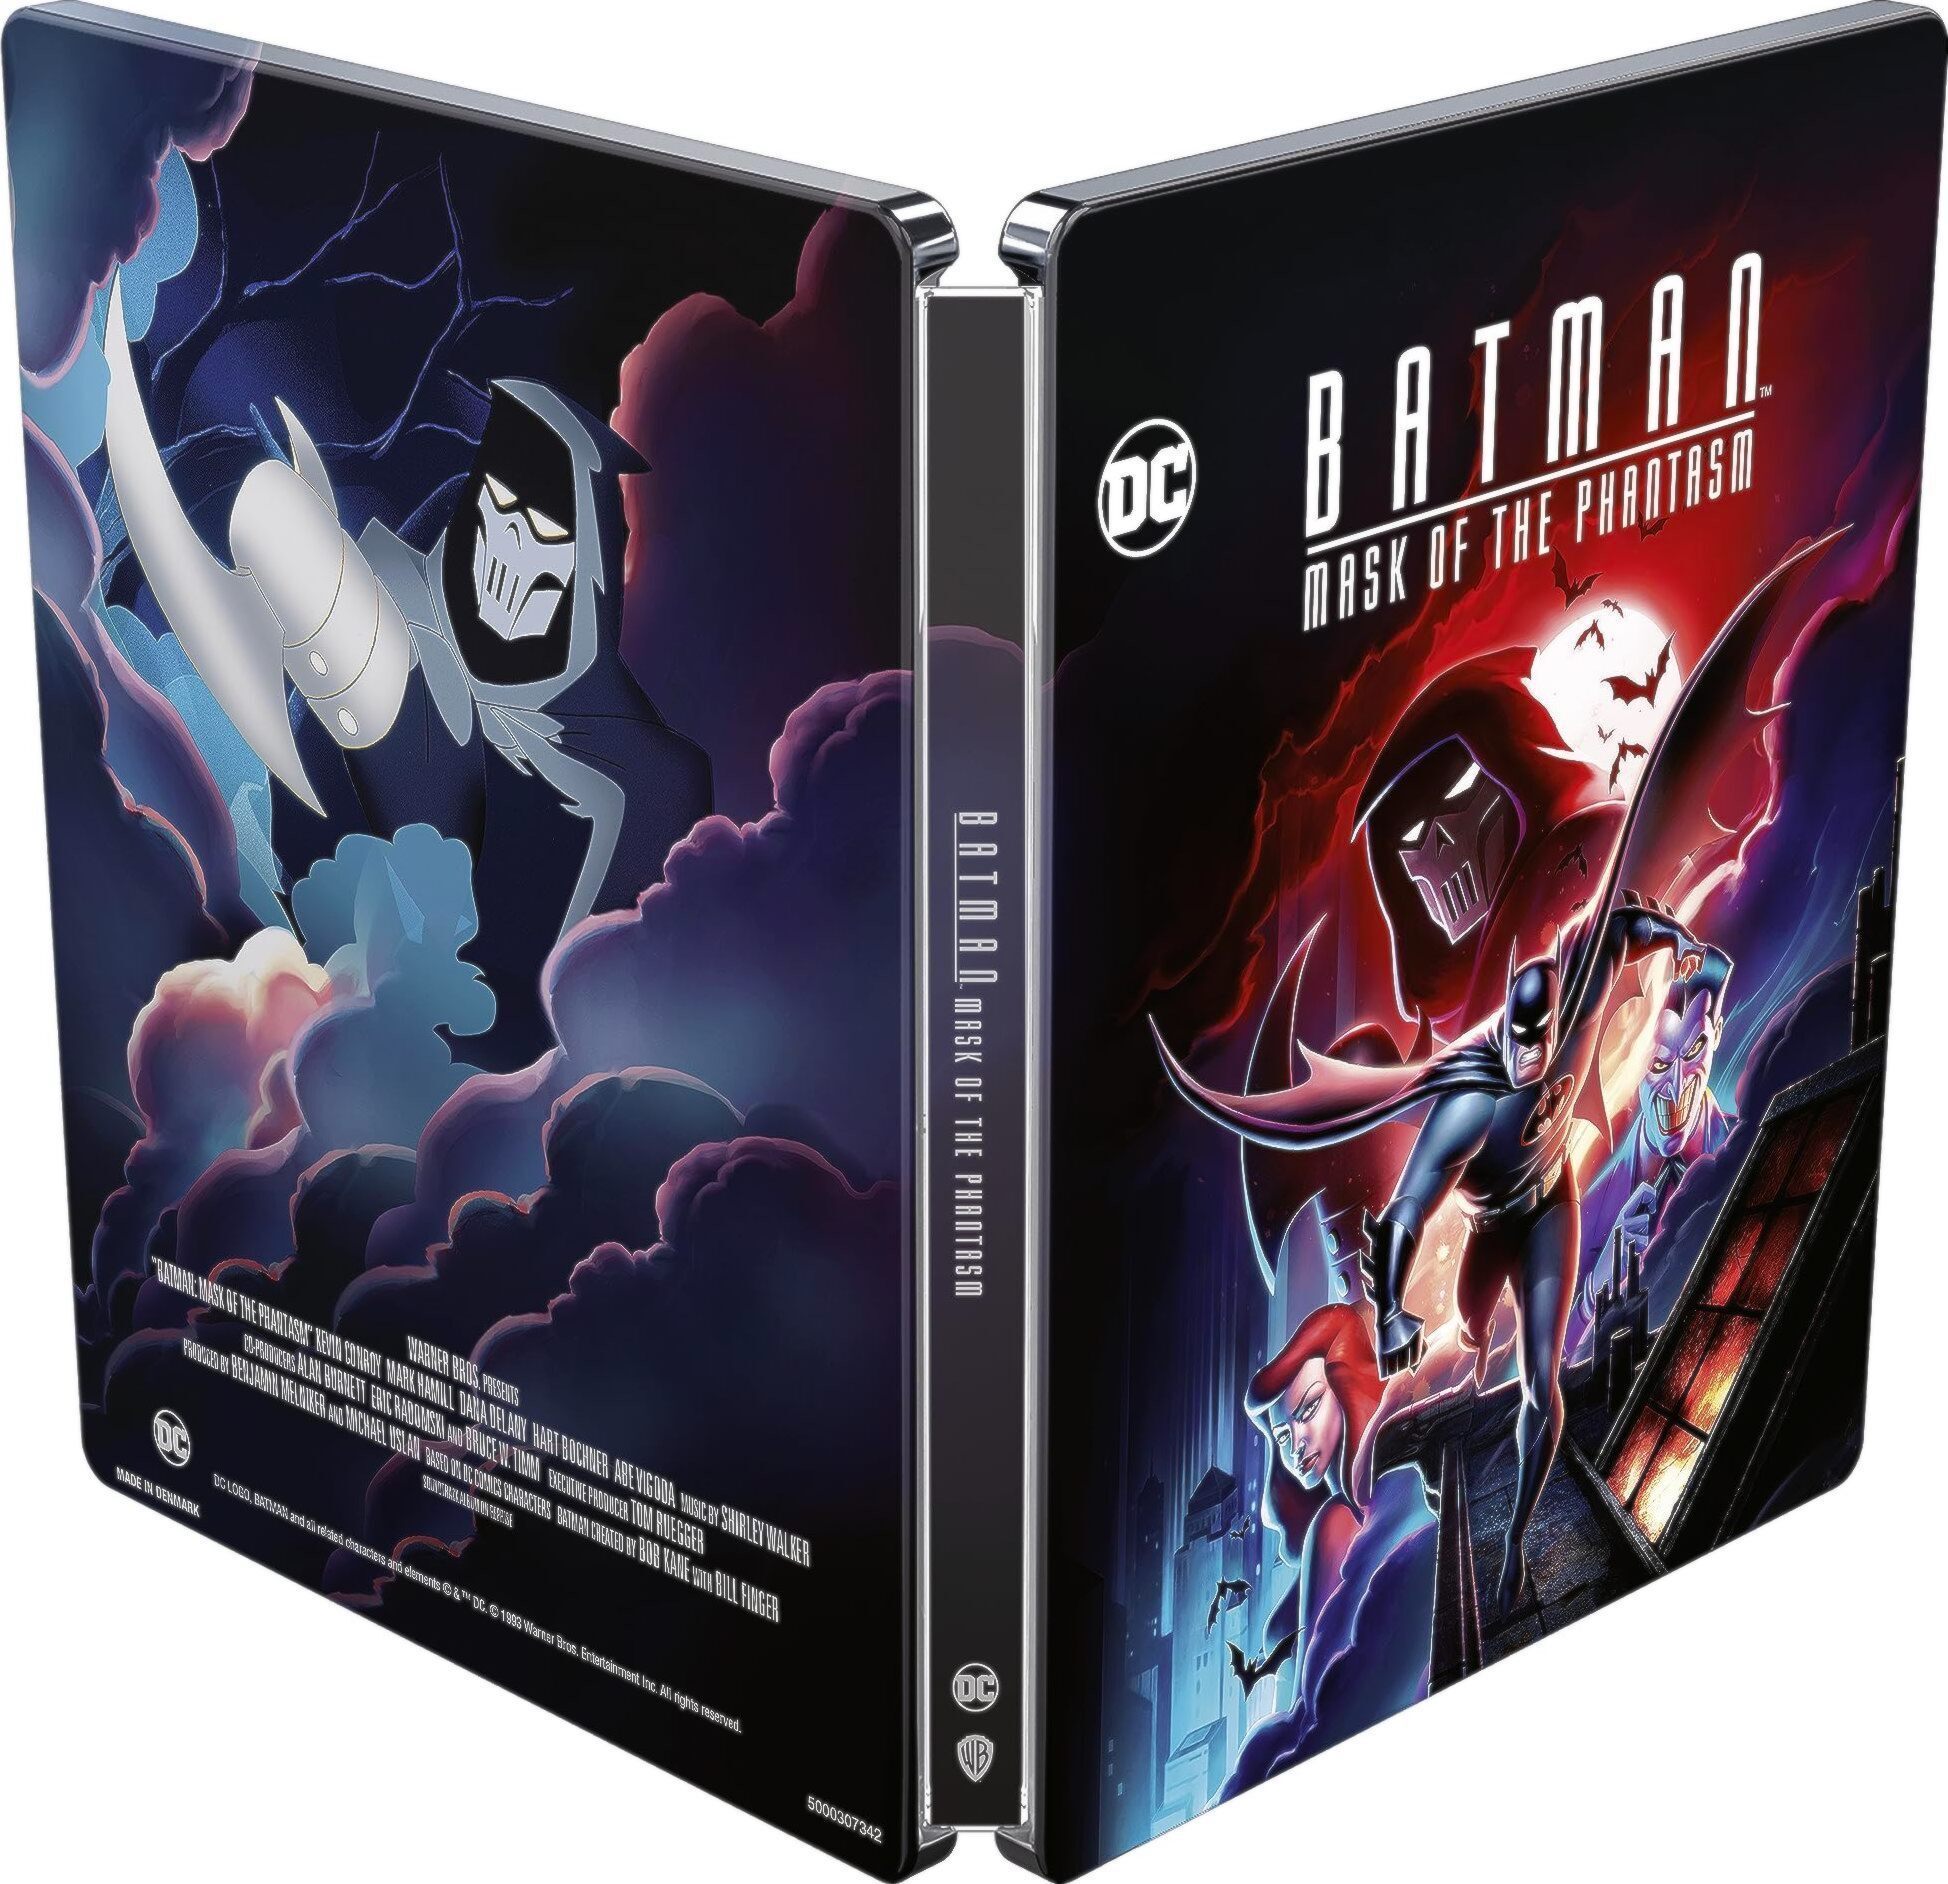  Batman: Mask of the Phantasm (4K Ultra HD/Digital) [4K